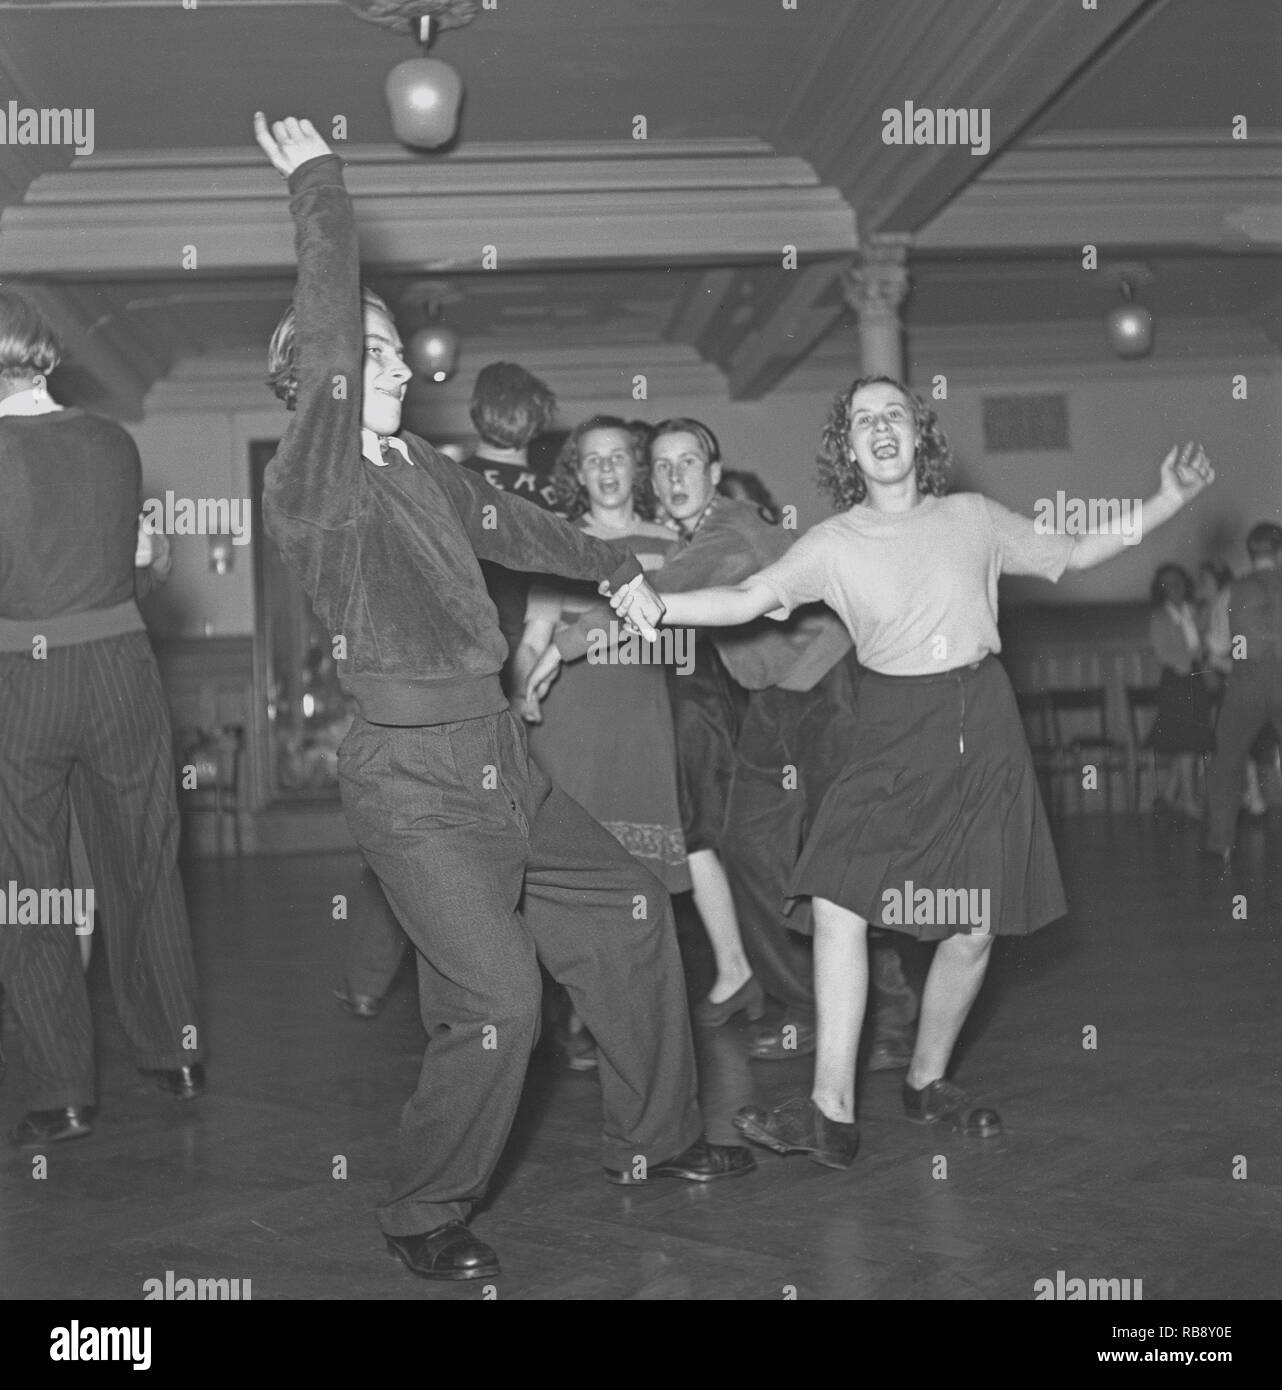 Jitterbug tanzen. Ein Tanz populär in den Vereinigten Staaten und von amerikanischen Soldaten und Matrosen auf der ganzen Welt während des Zweiten Weltkriegs. Hier sehen Sie ein junges Paar beim Tanzen die Jitterbug tanzen 1944. Foto: Kristoffersson ref L 2-6 Stockfoto